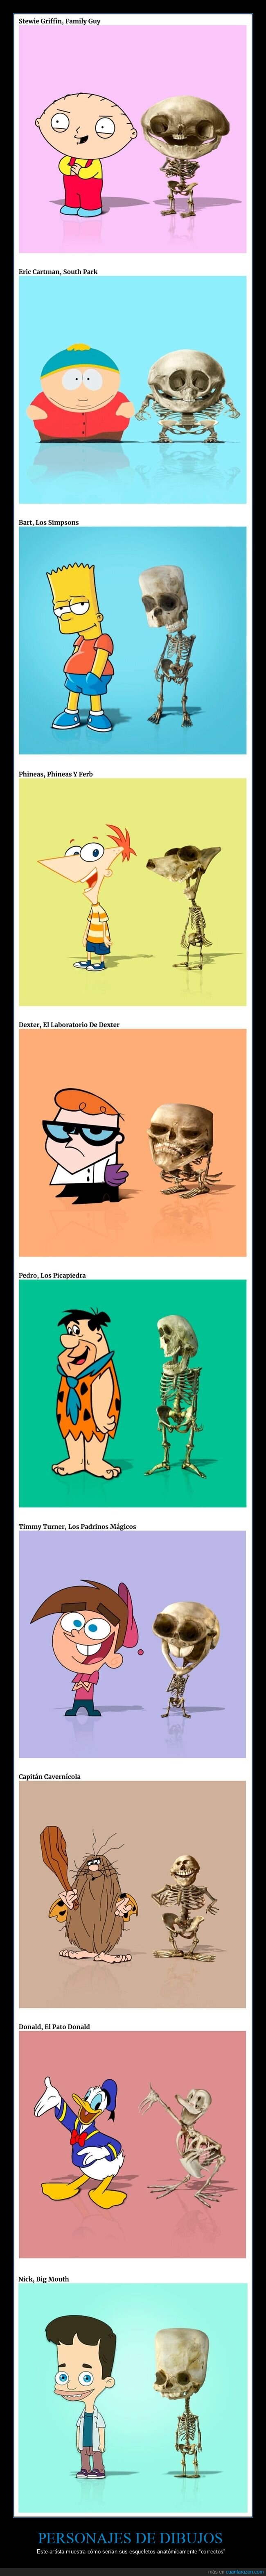 personajes,esqueletos